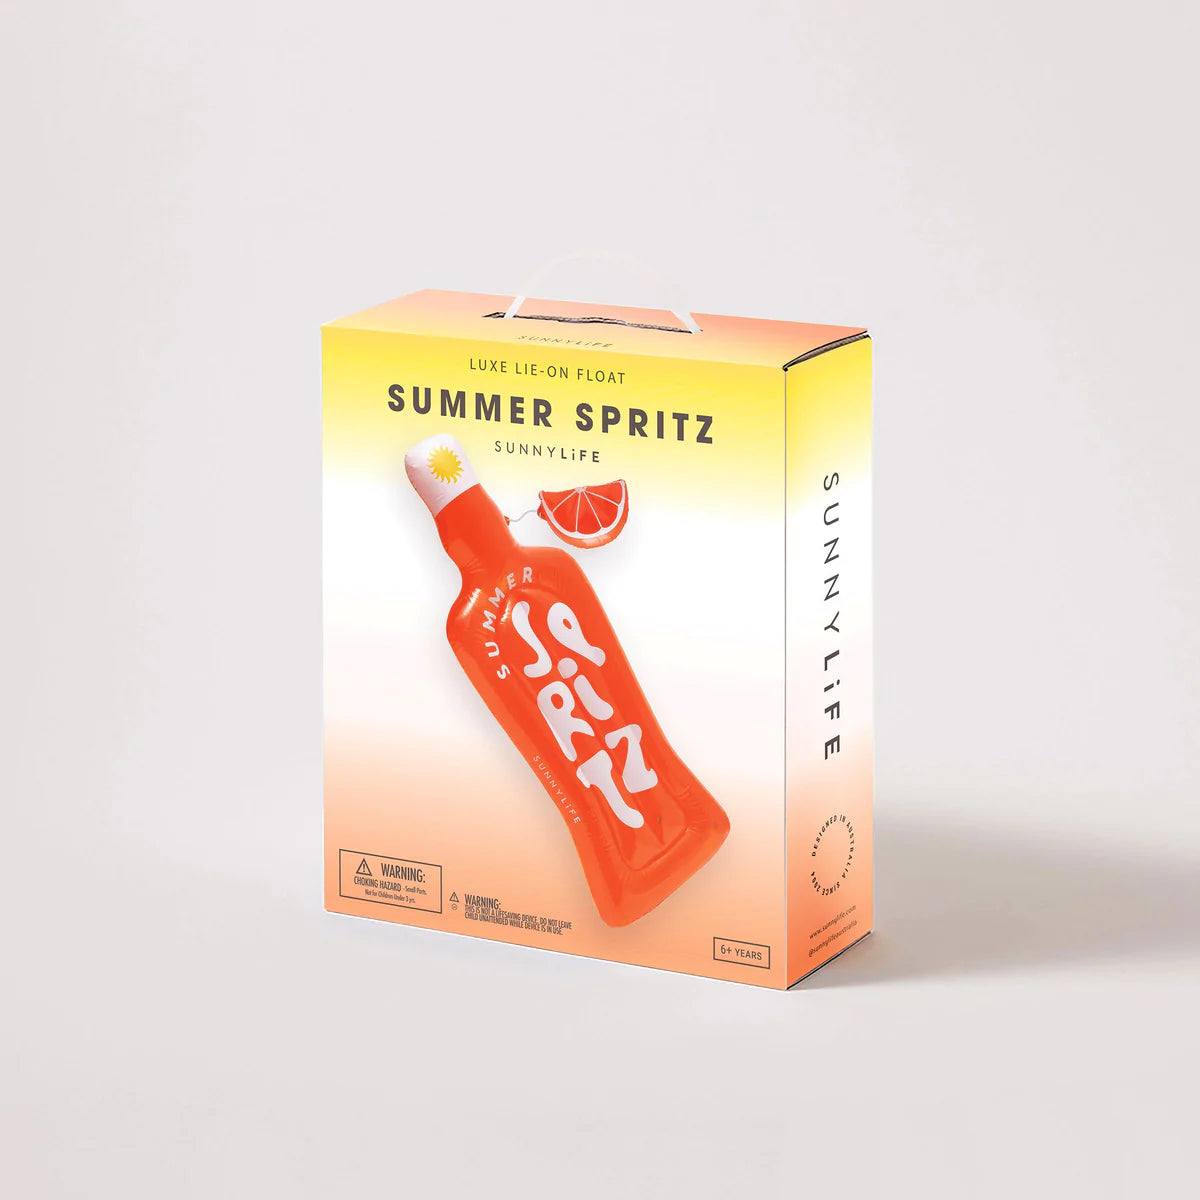 SUNNYLiFE Luxe Lie-On Float - Summer Spritz